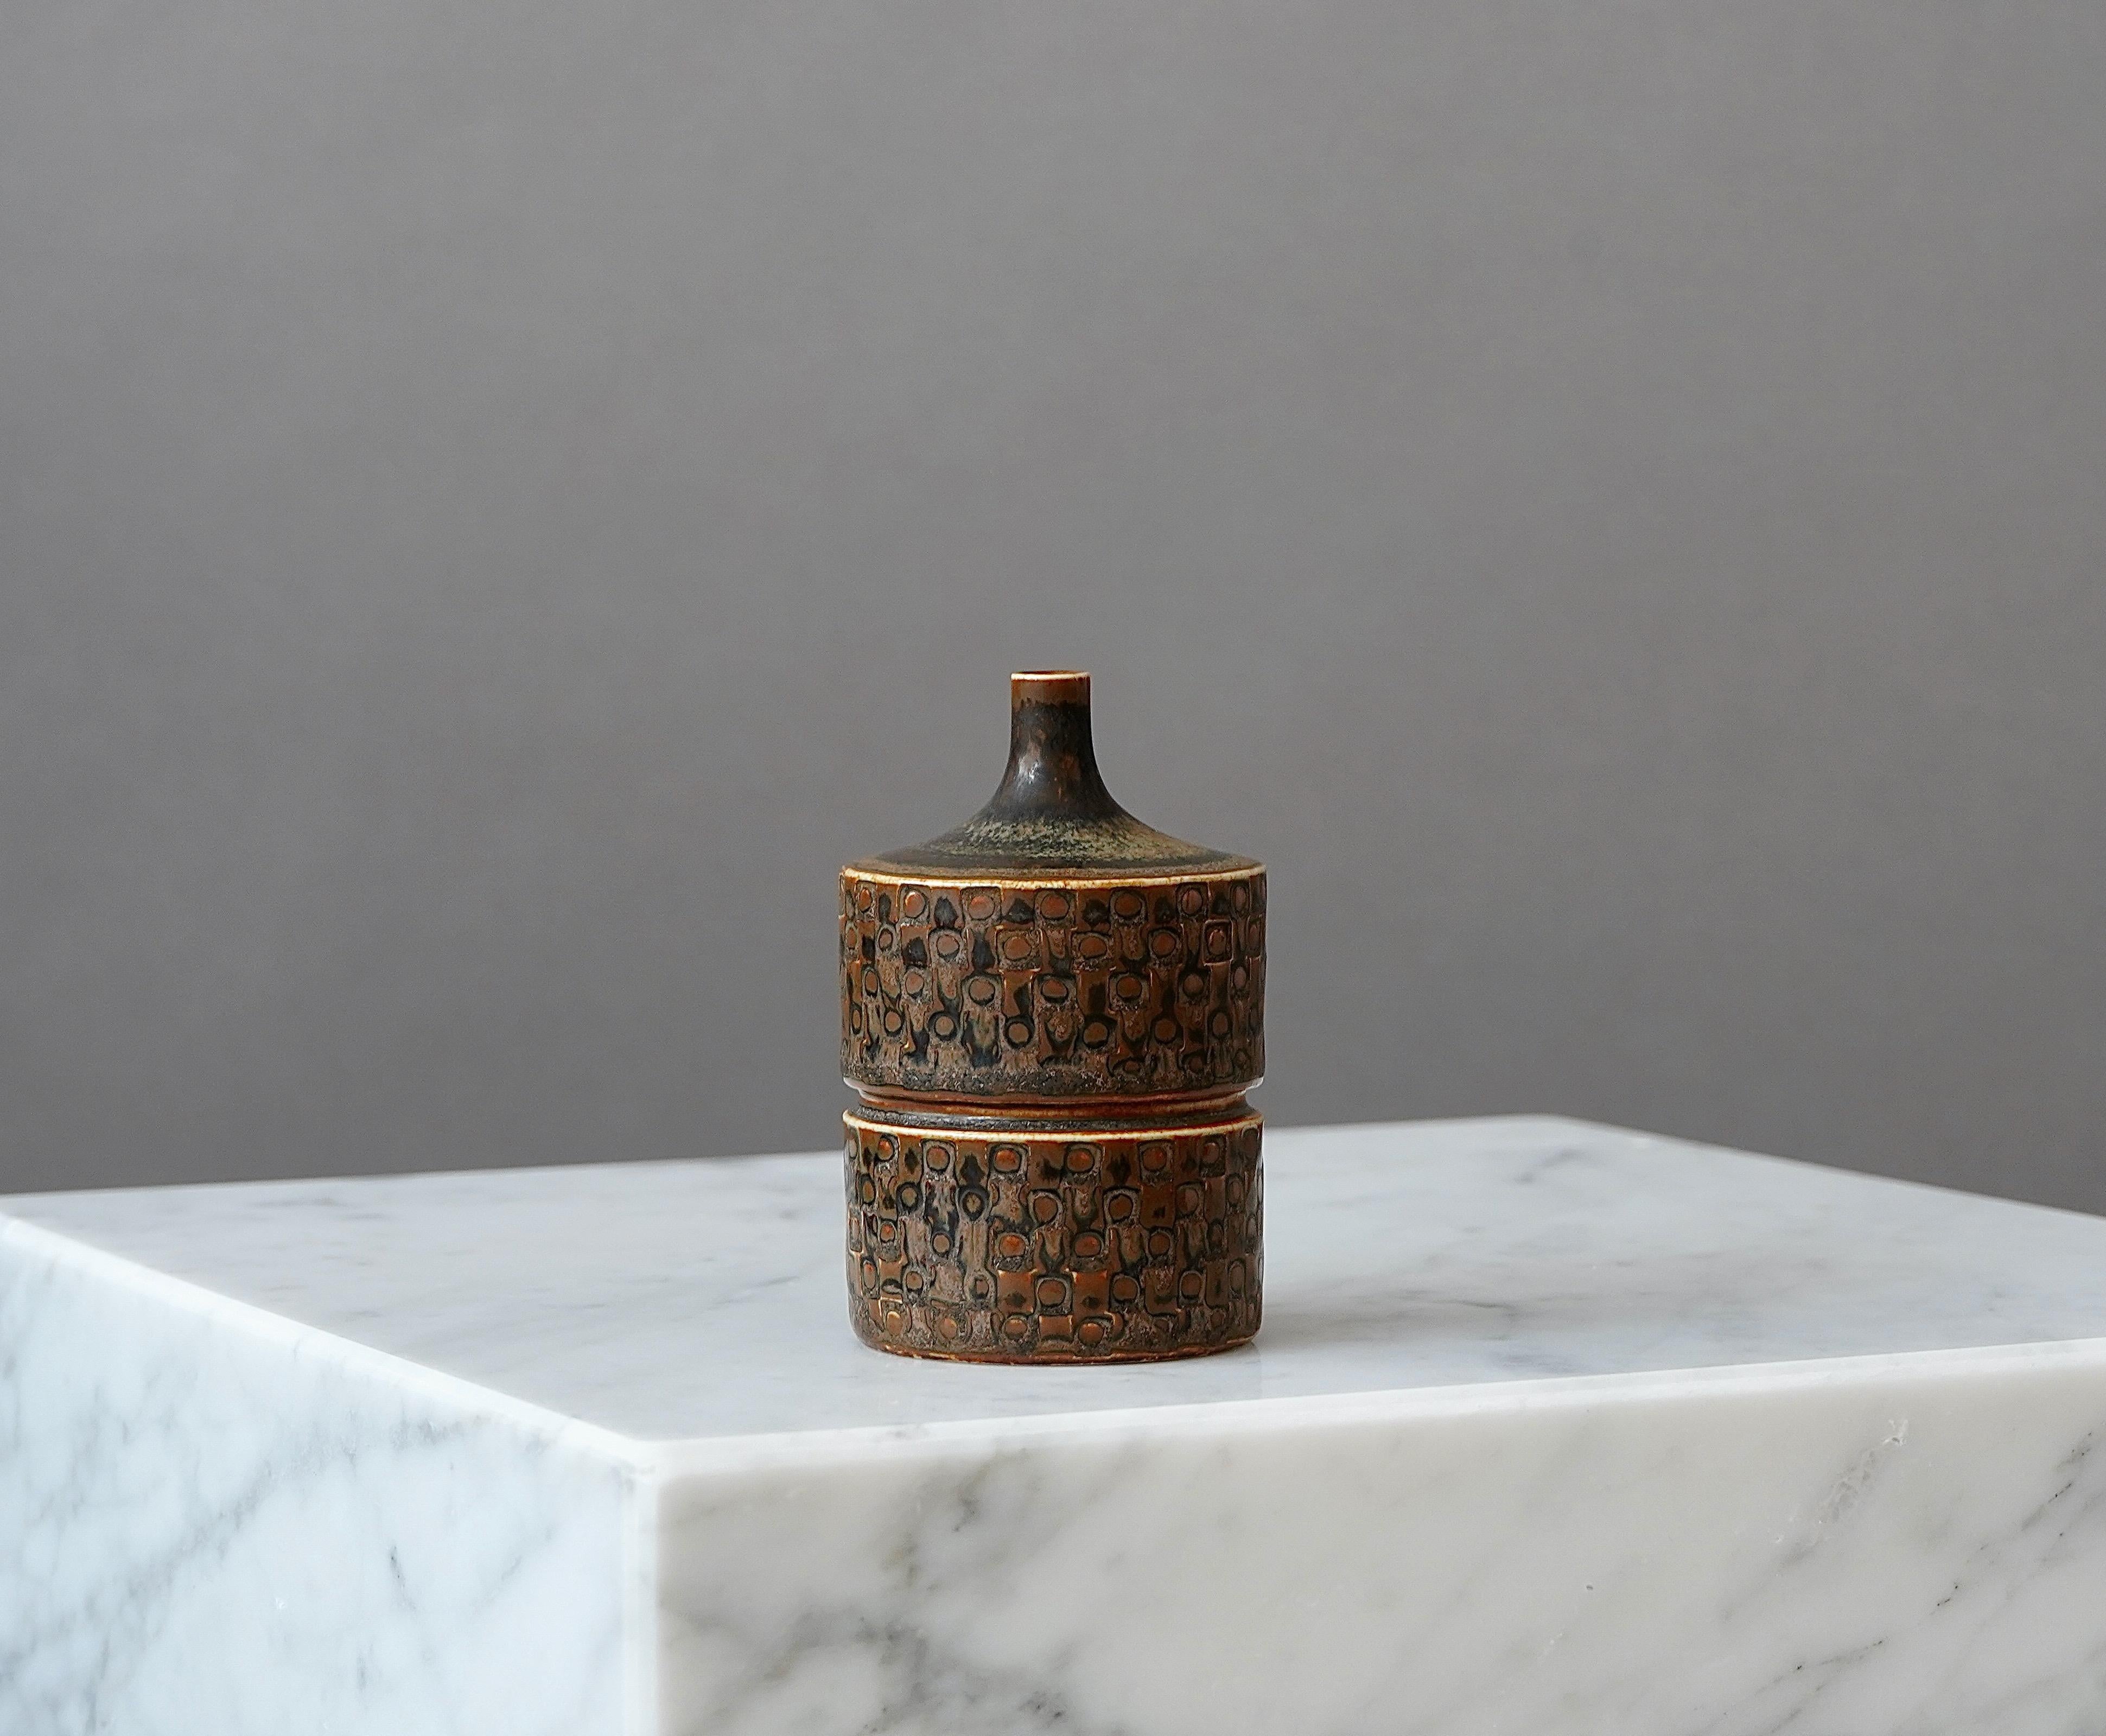 Eine schöne und einzigartige Vase aus Steingut mit erstaunlicher Glasur.
Hergestellt von Stig Lindberg im Gustavsberg Studio, Schweden. 1962.

Ausgezeichneter Zustand.
Eingeritzt 